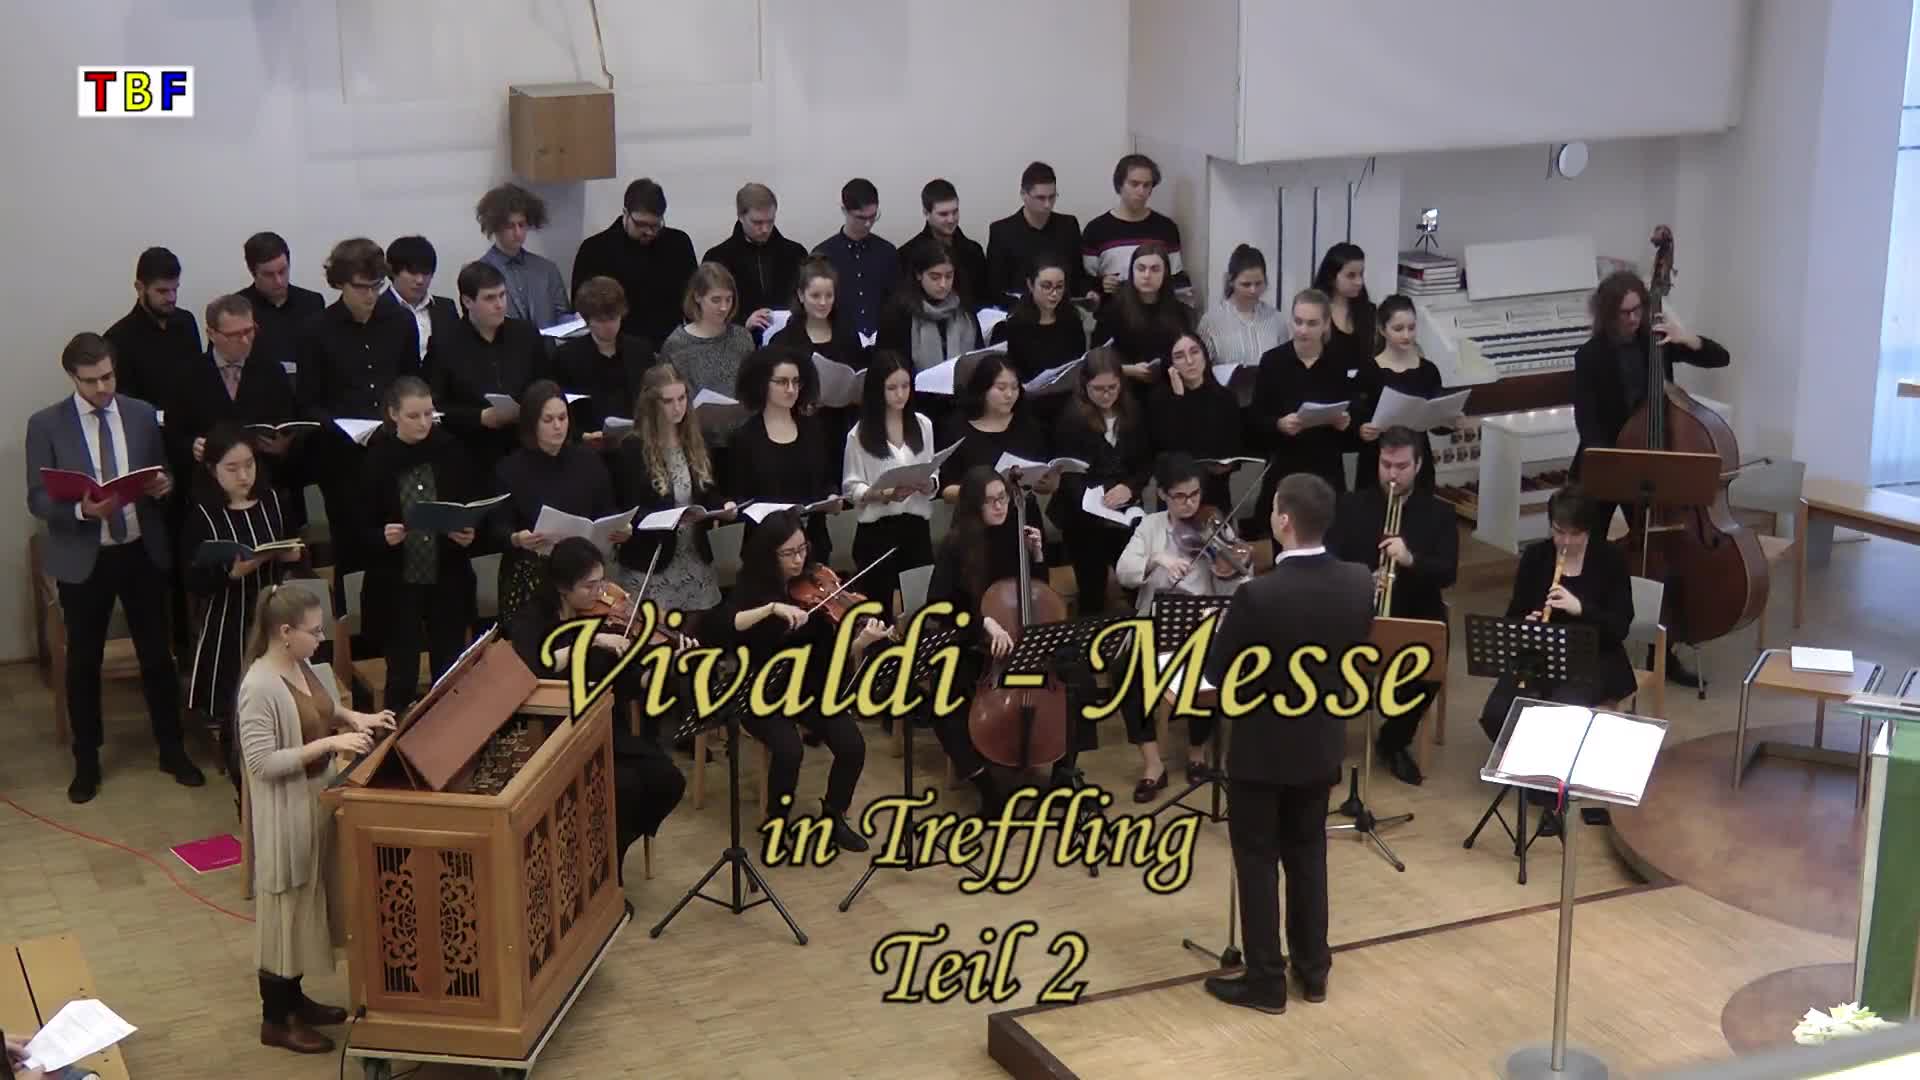 Vivaldi-Messe in Treffling, Teil 2